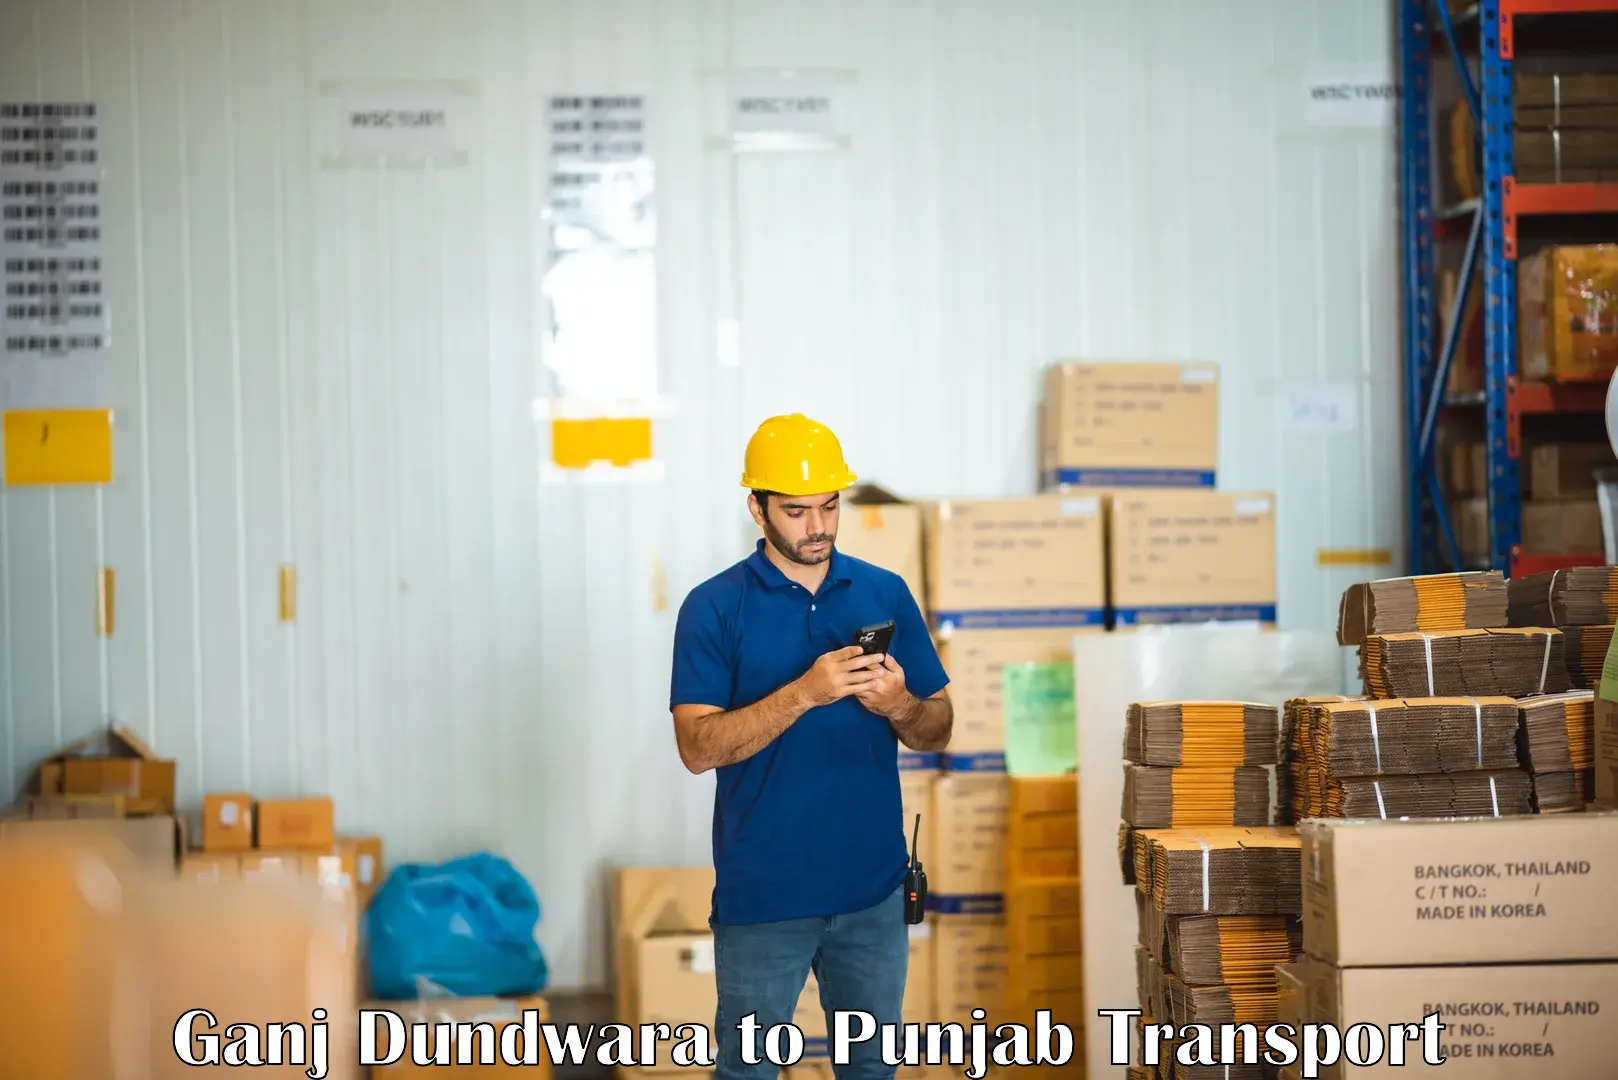 Vehicle parcel service Ganj Dundwara to Dhilwan